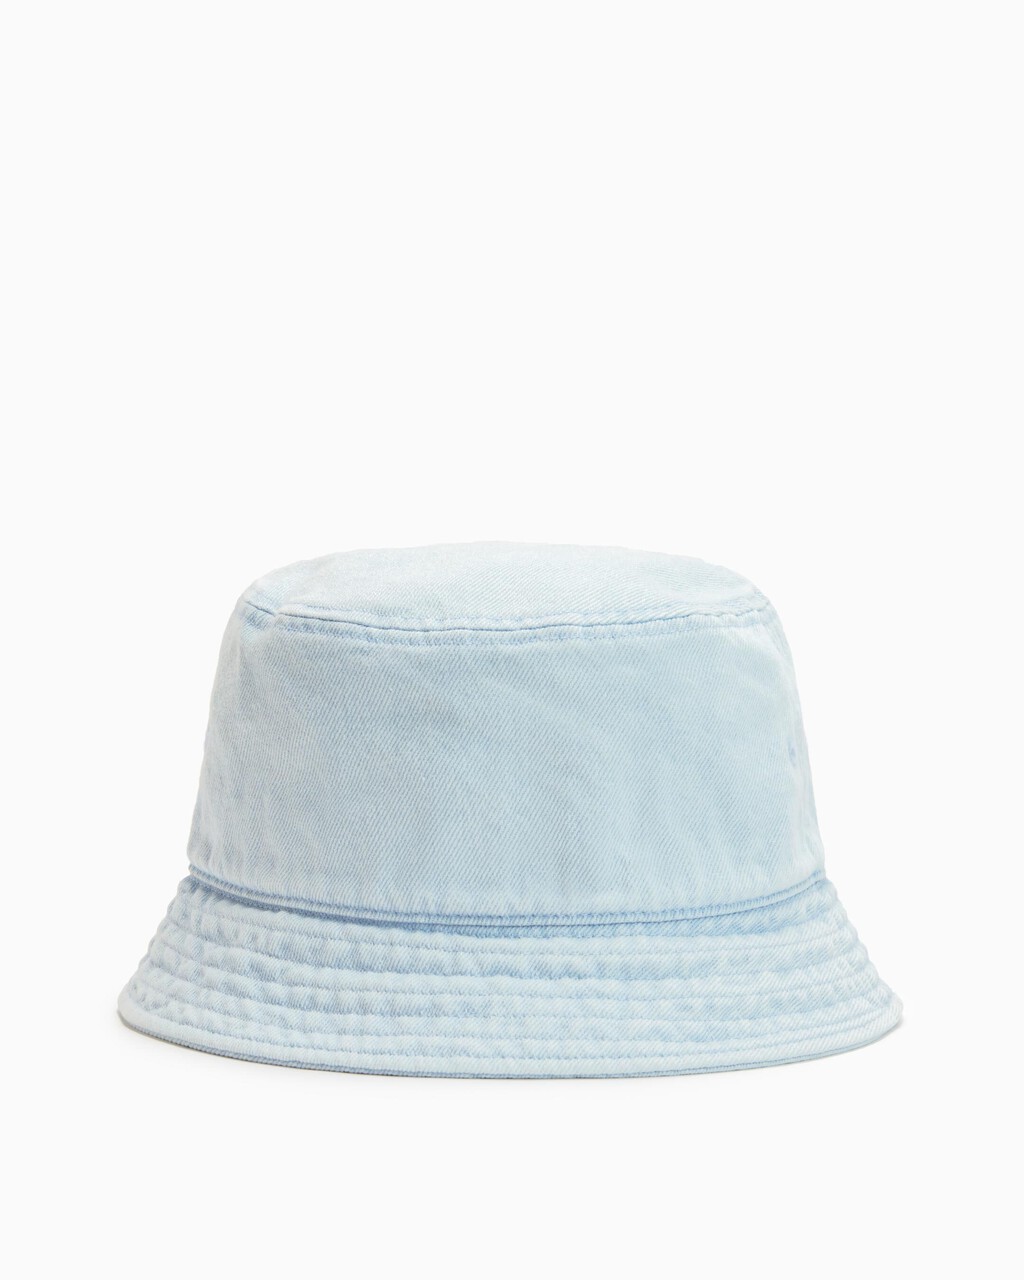 Washed Denim Monogram Bucket Hat, LIGHT WASH DENI, hi-res